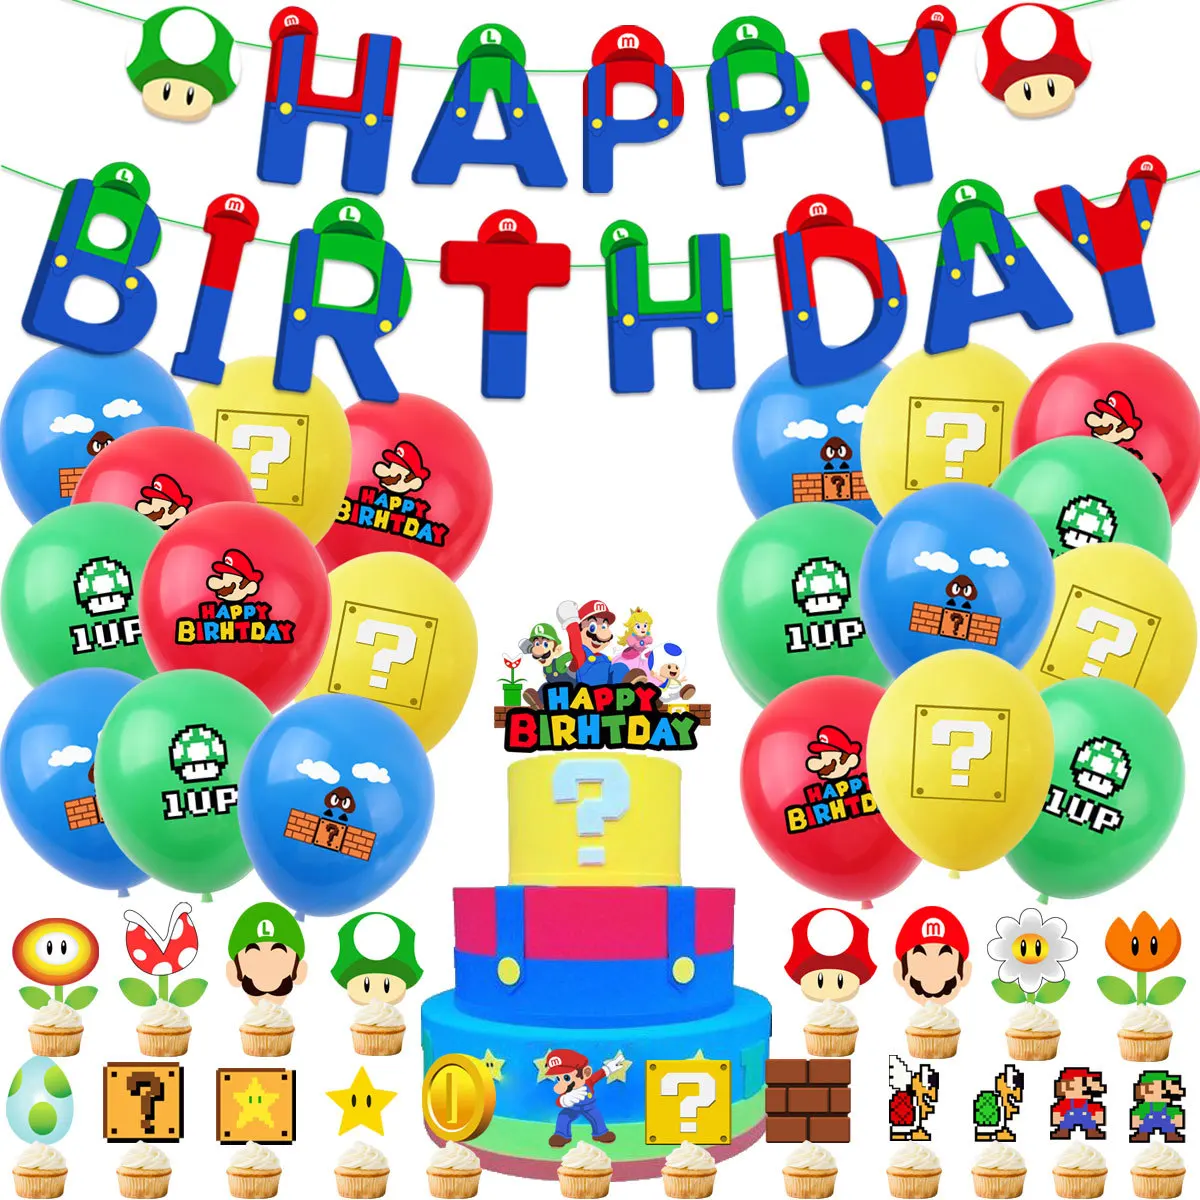 Набор декоративных фигурок «Супер Марио» для тематики вечеринки, детские игровые Фигурки Марио, открытки с флагом, набор воздушных шаров, п...